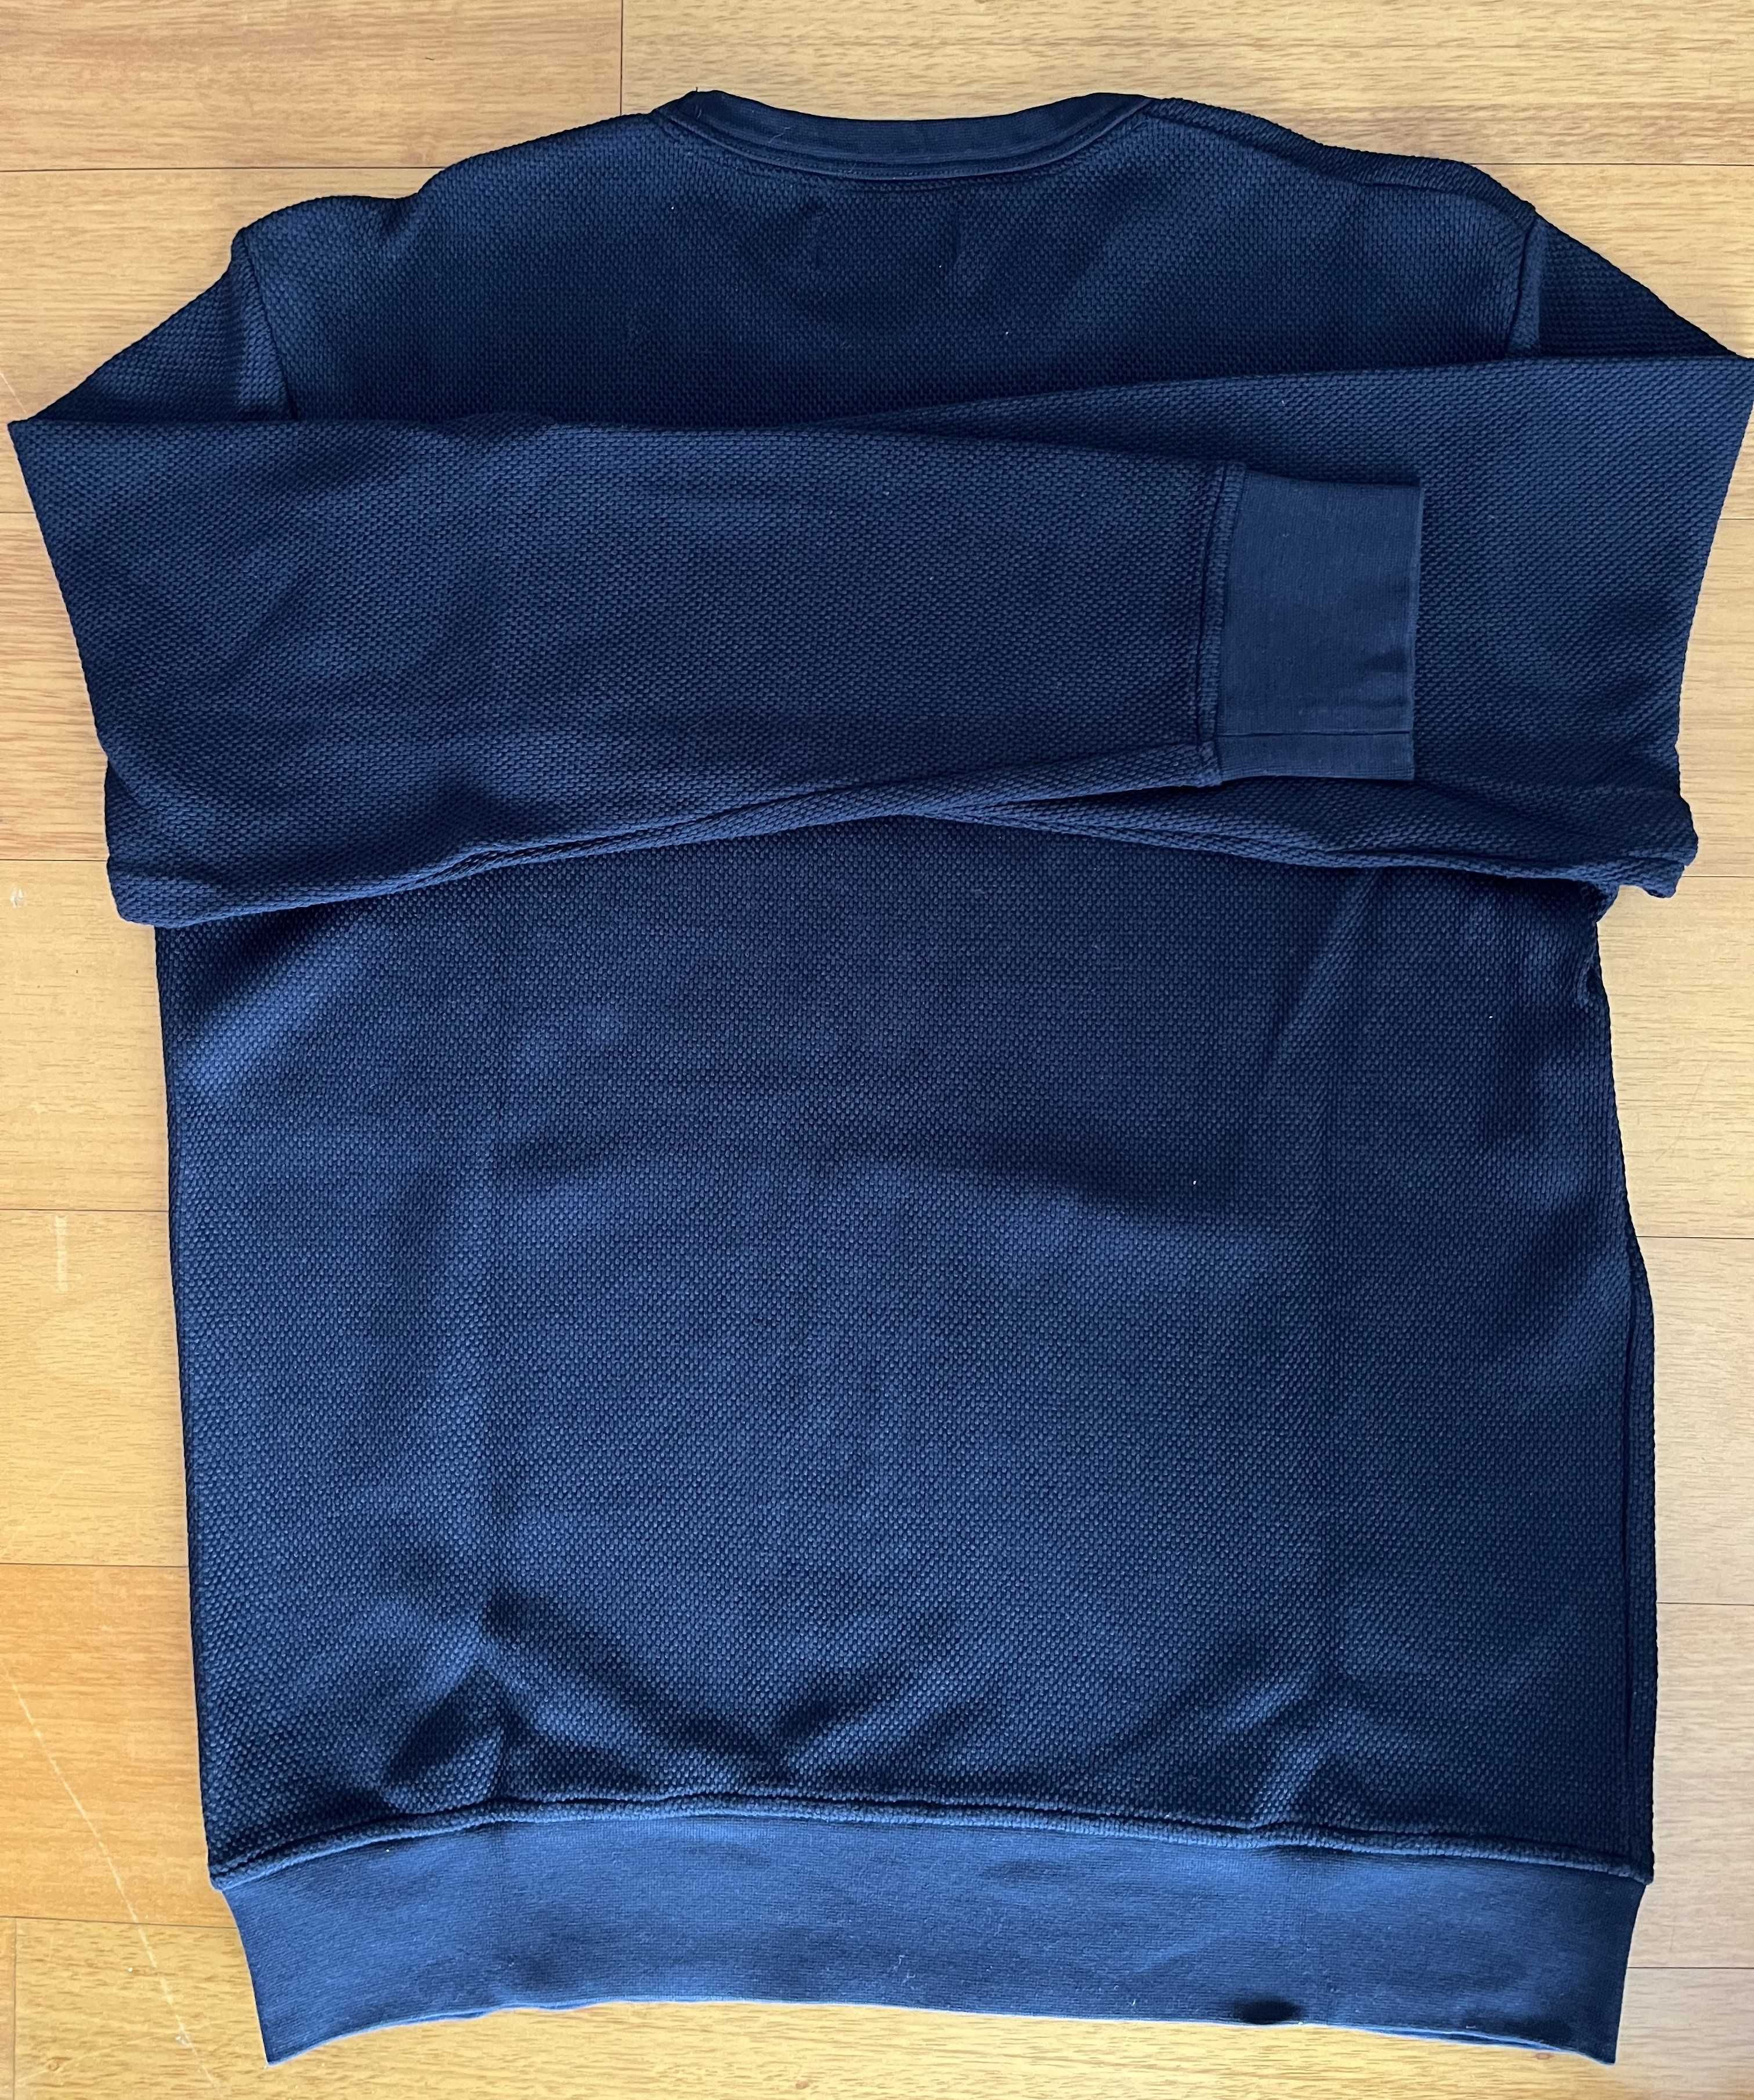 Camisola azul marinho da Fred Perry - Homem - Tamanho L